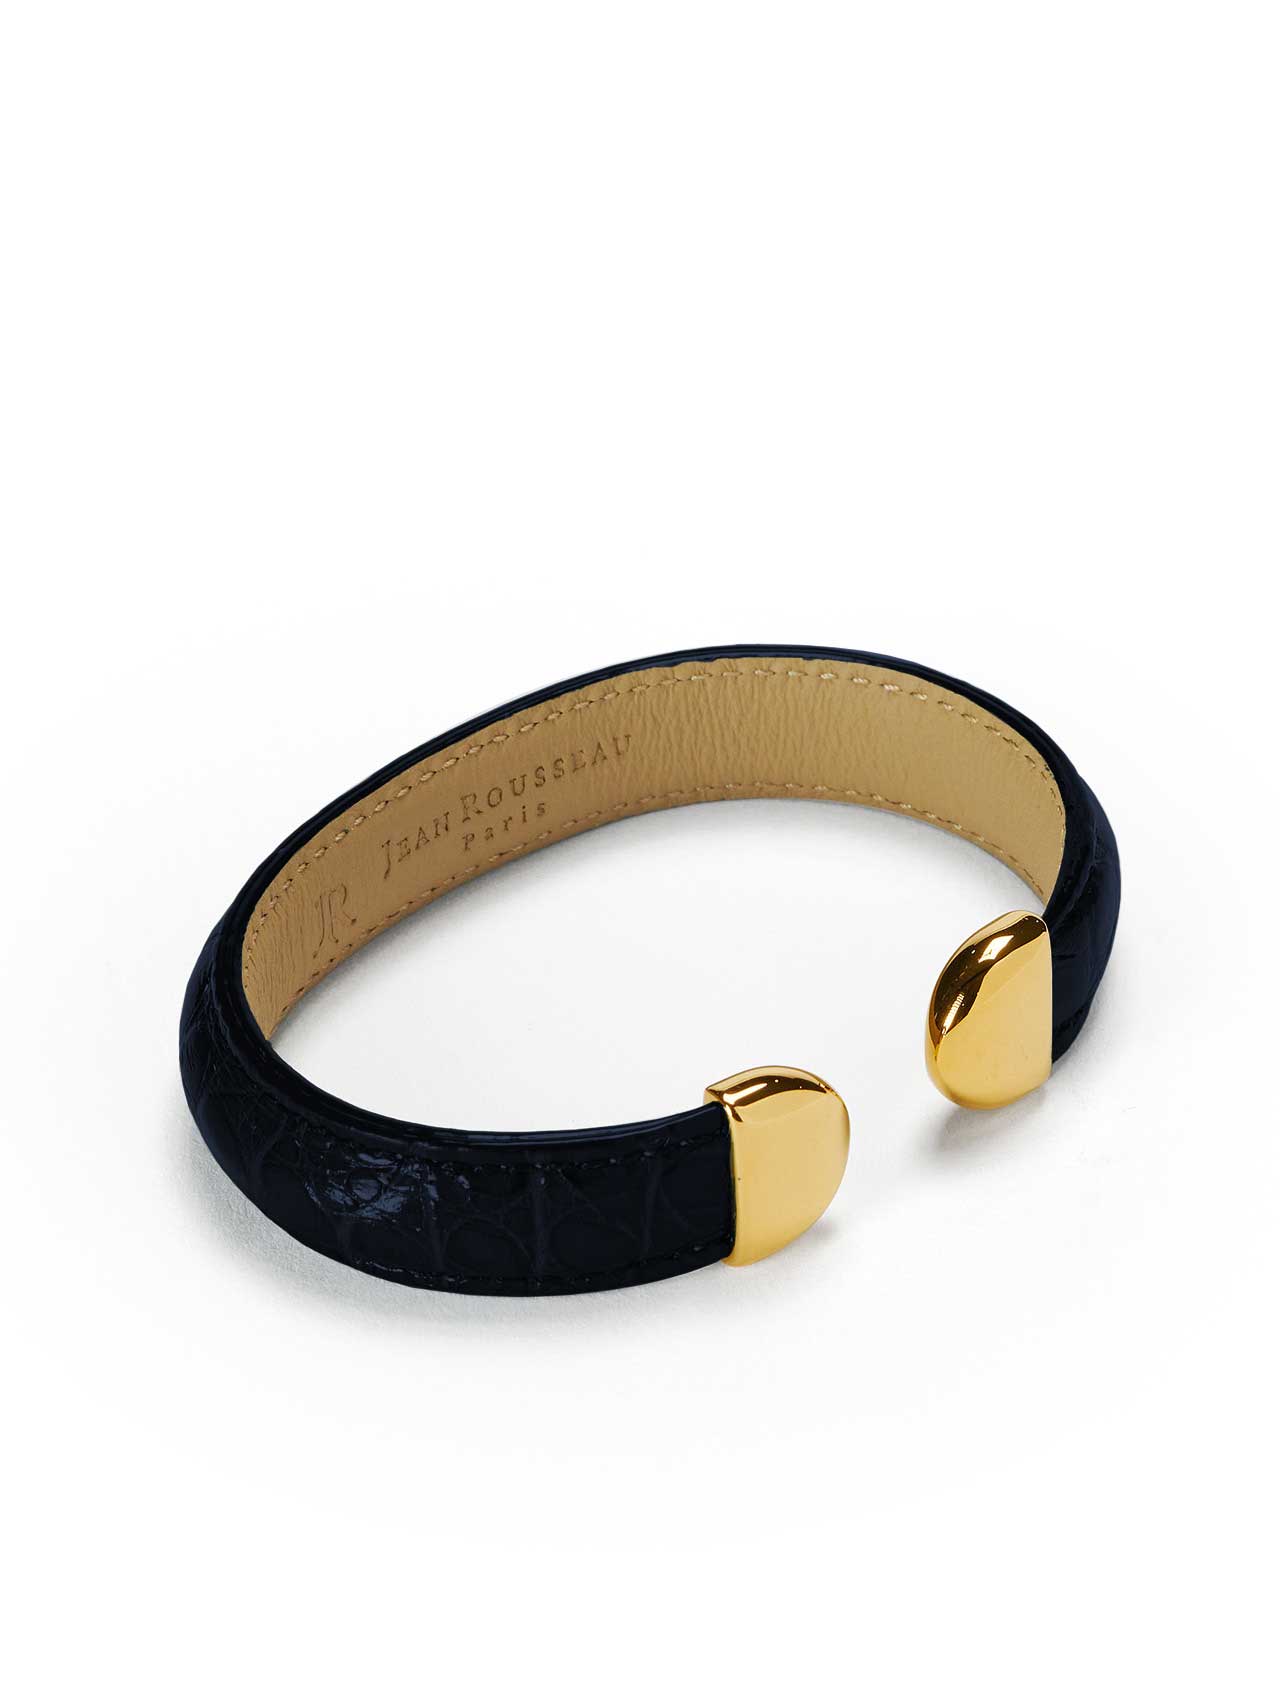 bracelet black leather jean rousseau